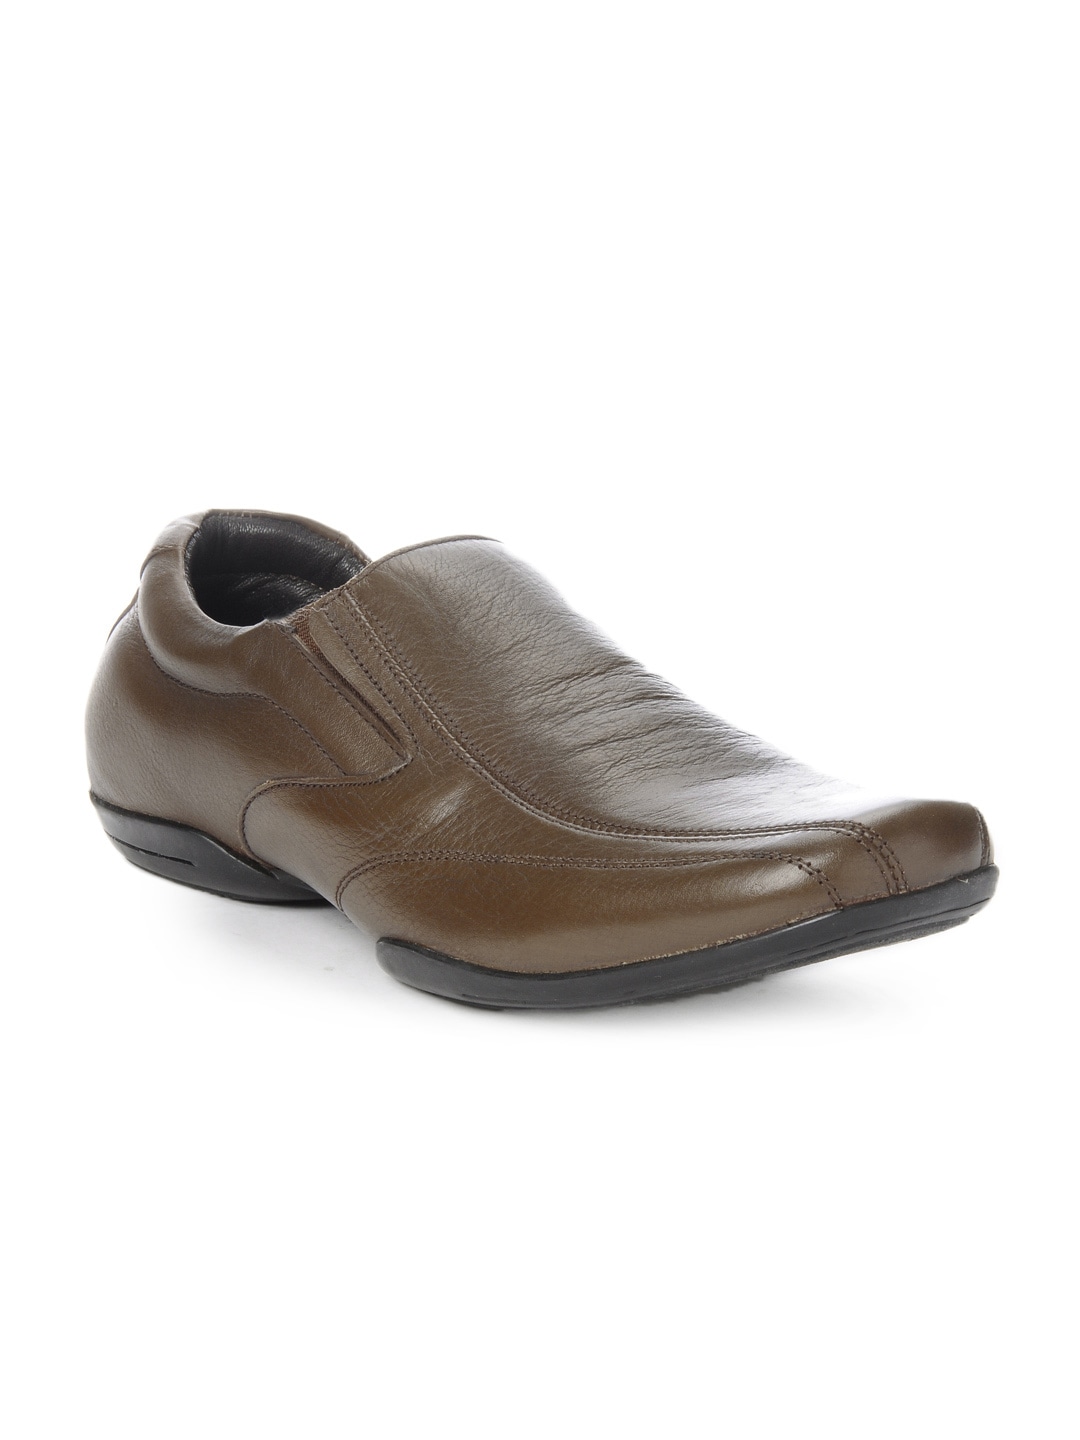 Franco Leone Men Brown Formal Shoes